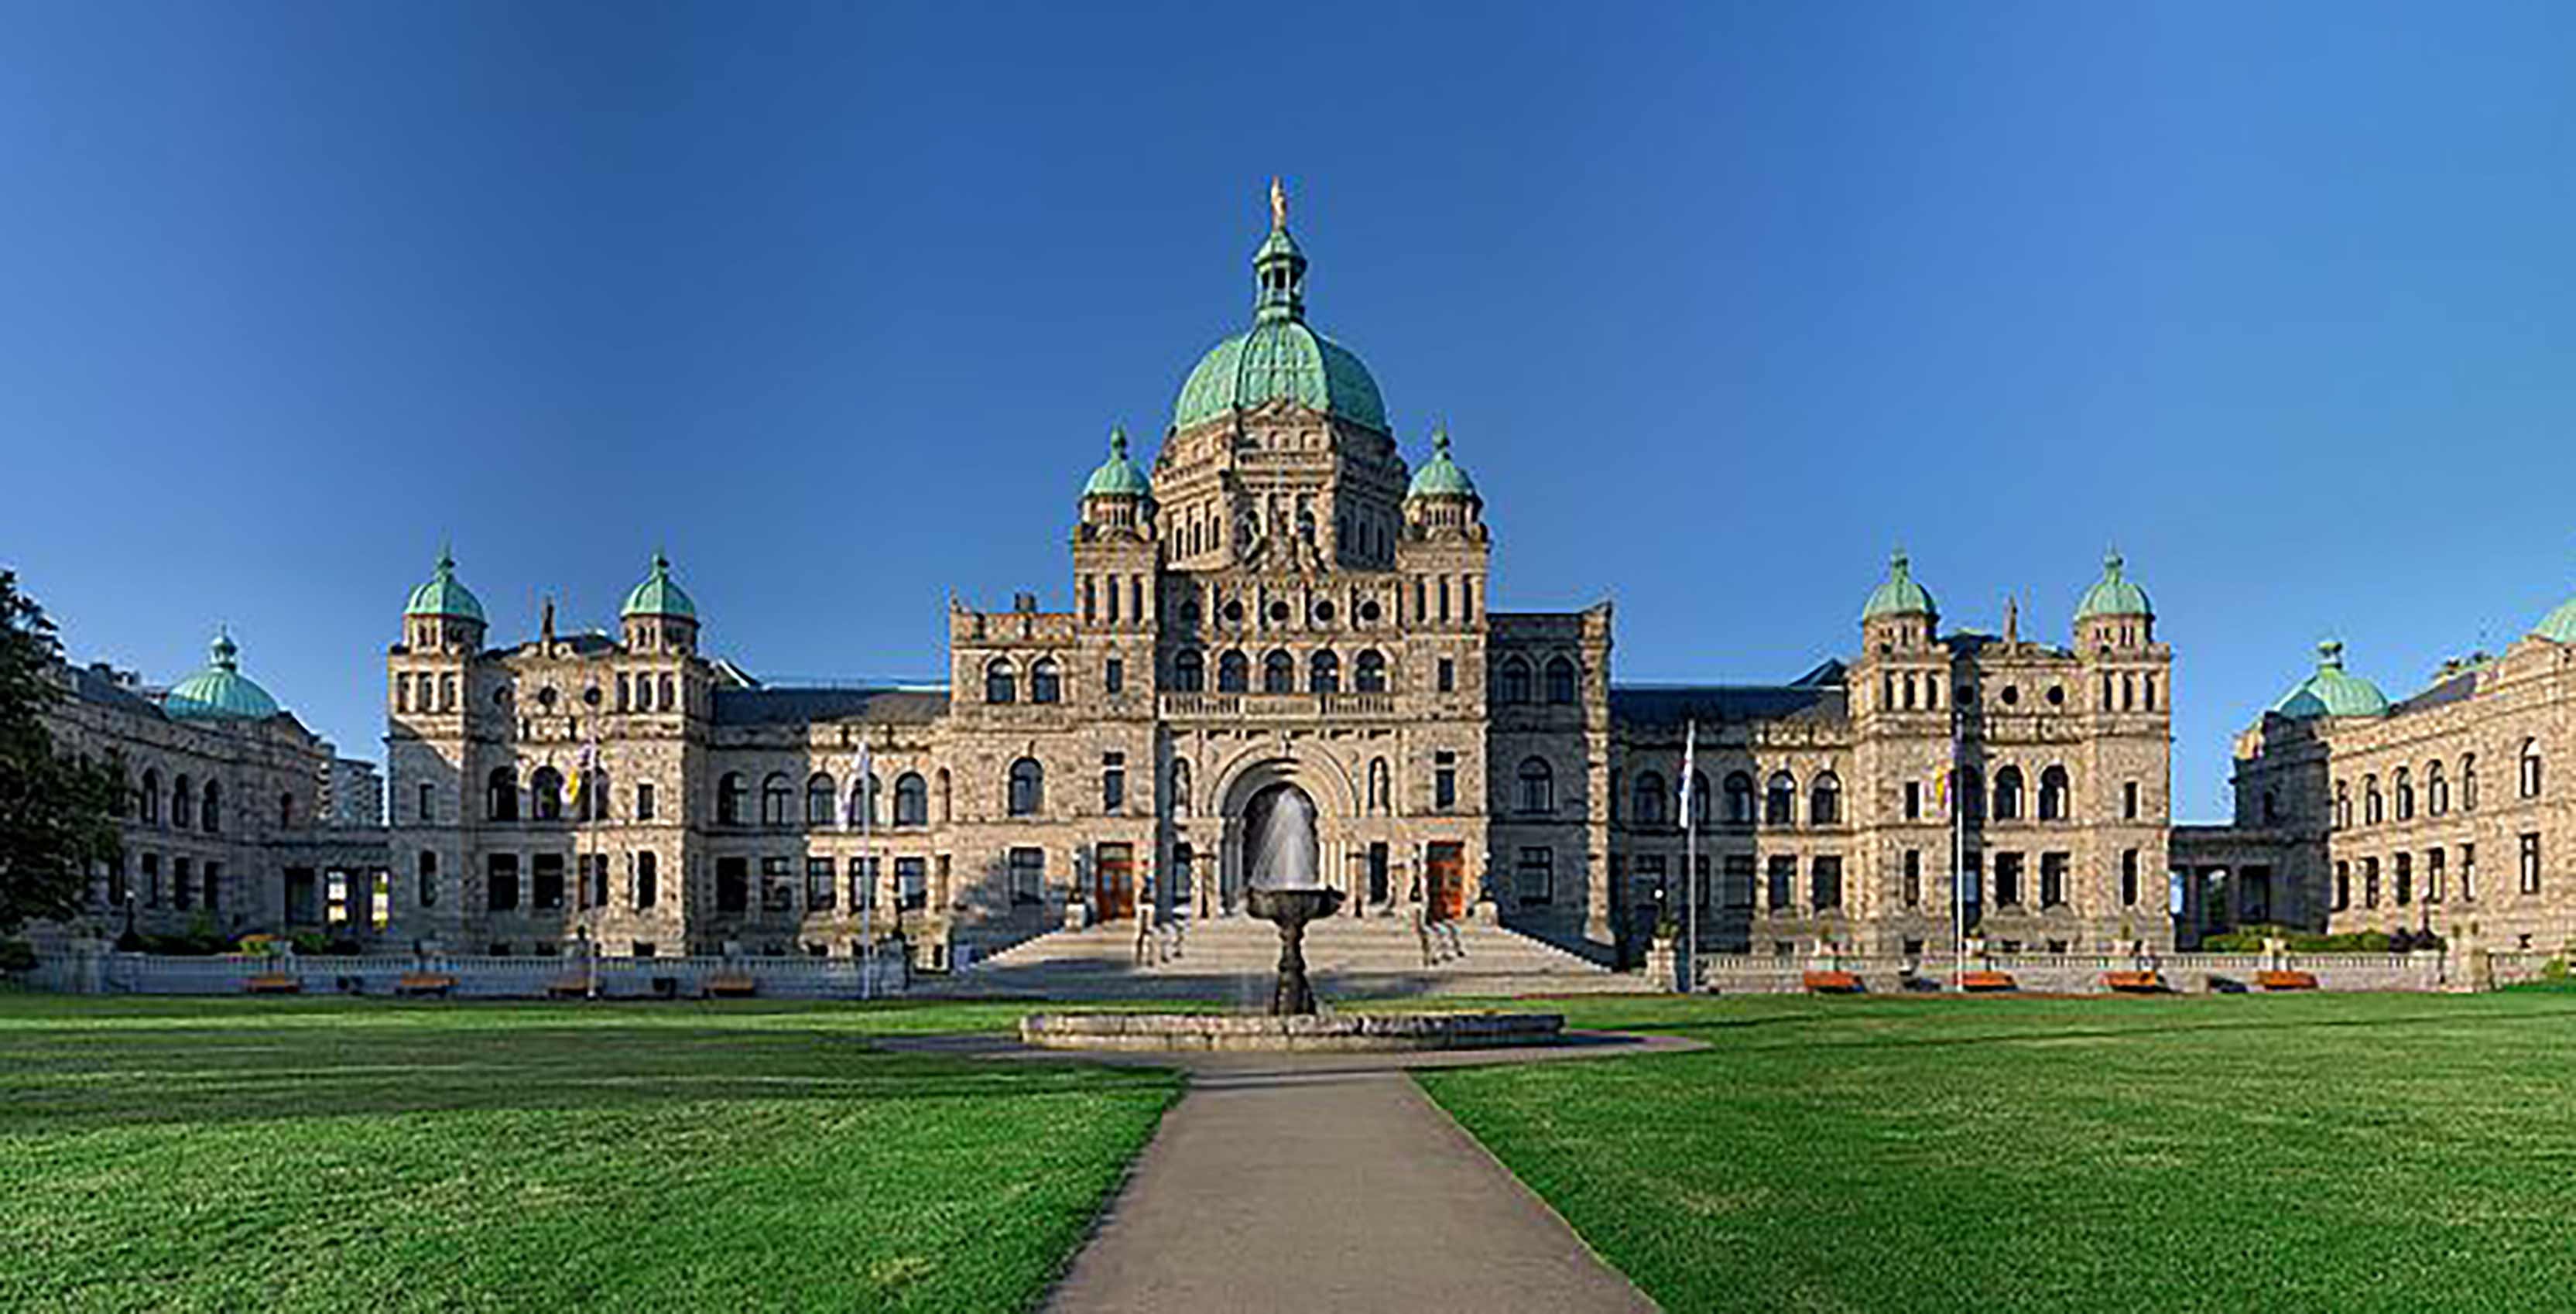 British Columbia Parliament